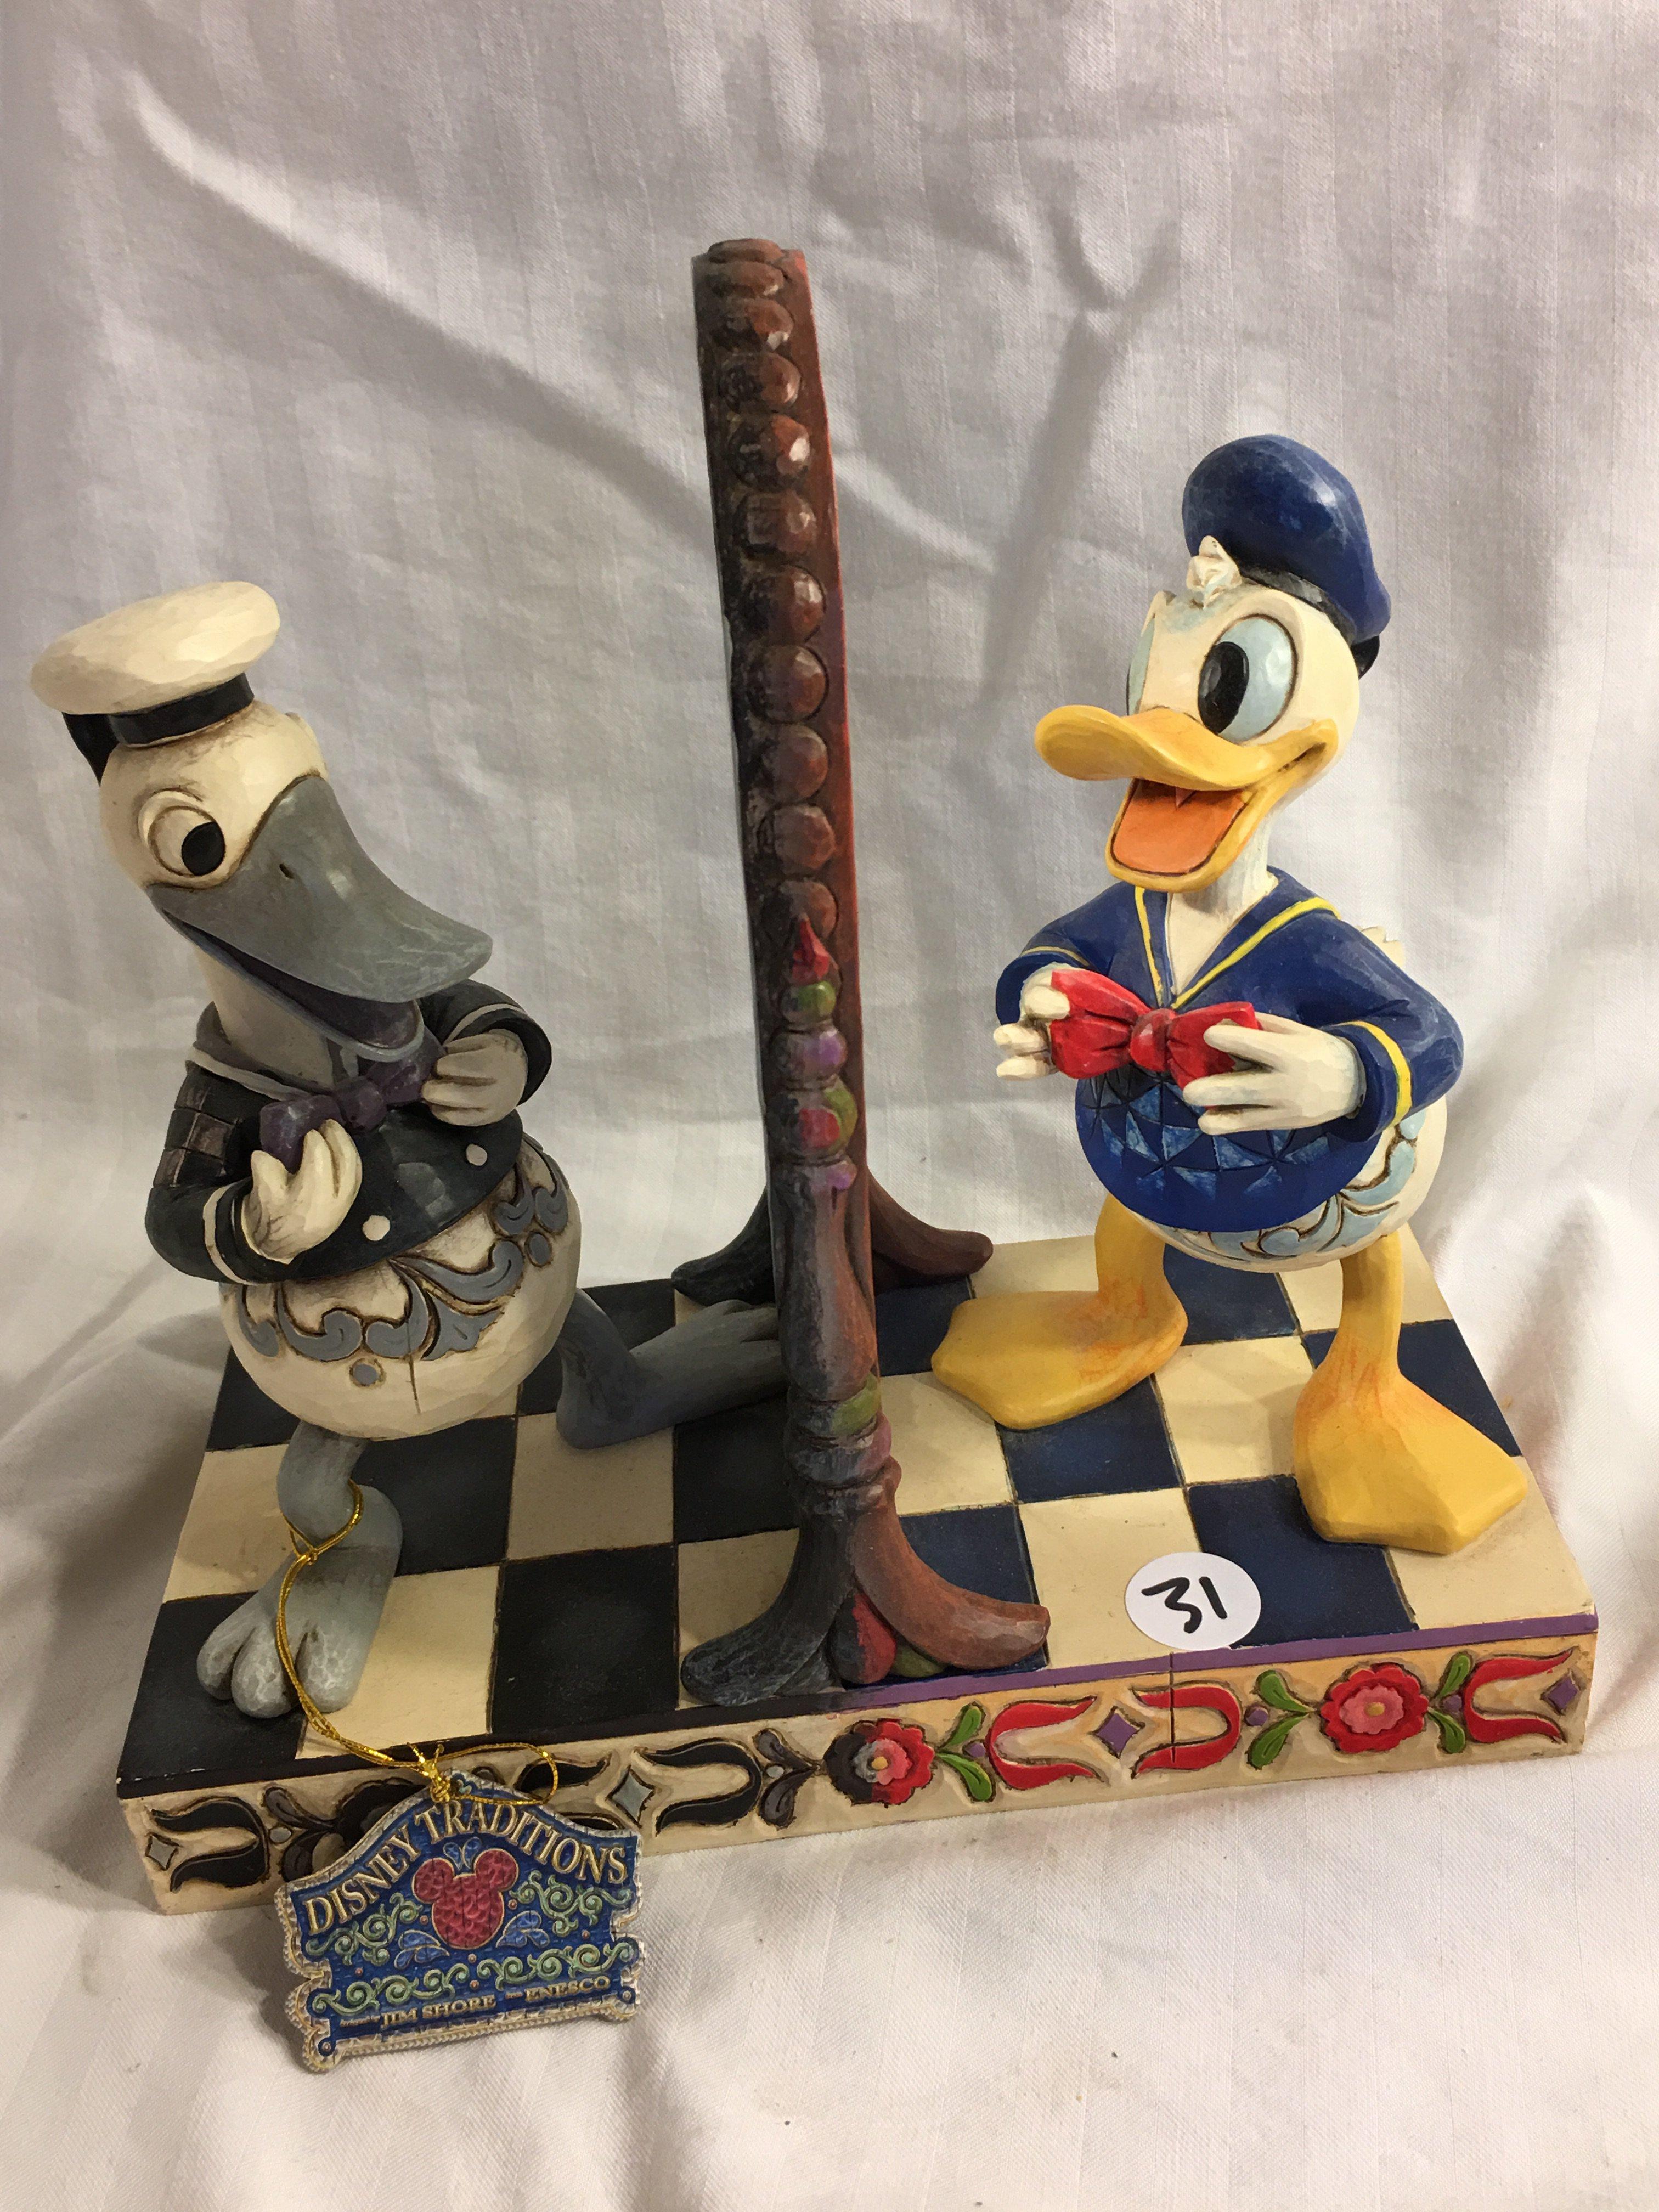 Collector Disney Tradition Jim Shore Enesco Showcase Collection Donald Duck Handsome as Ever" 8.5"